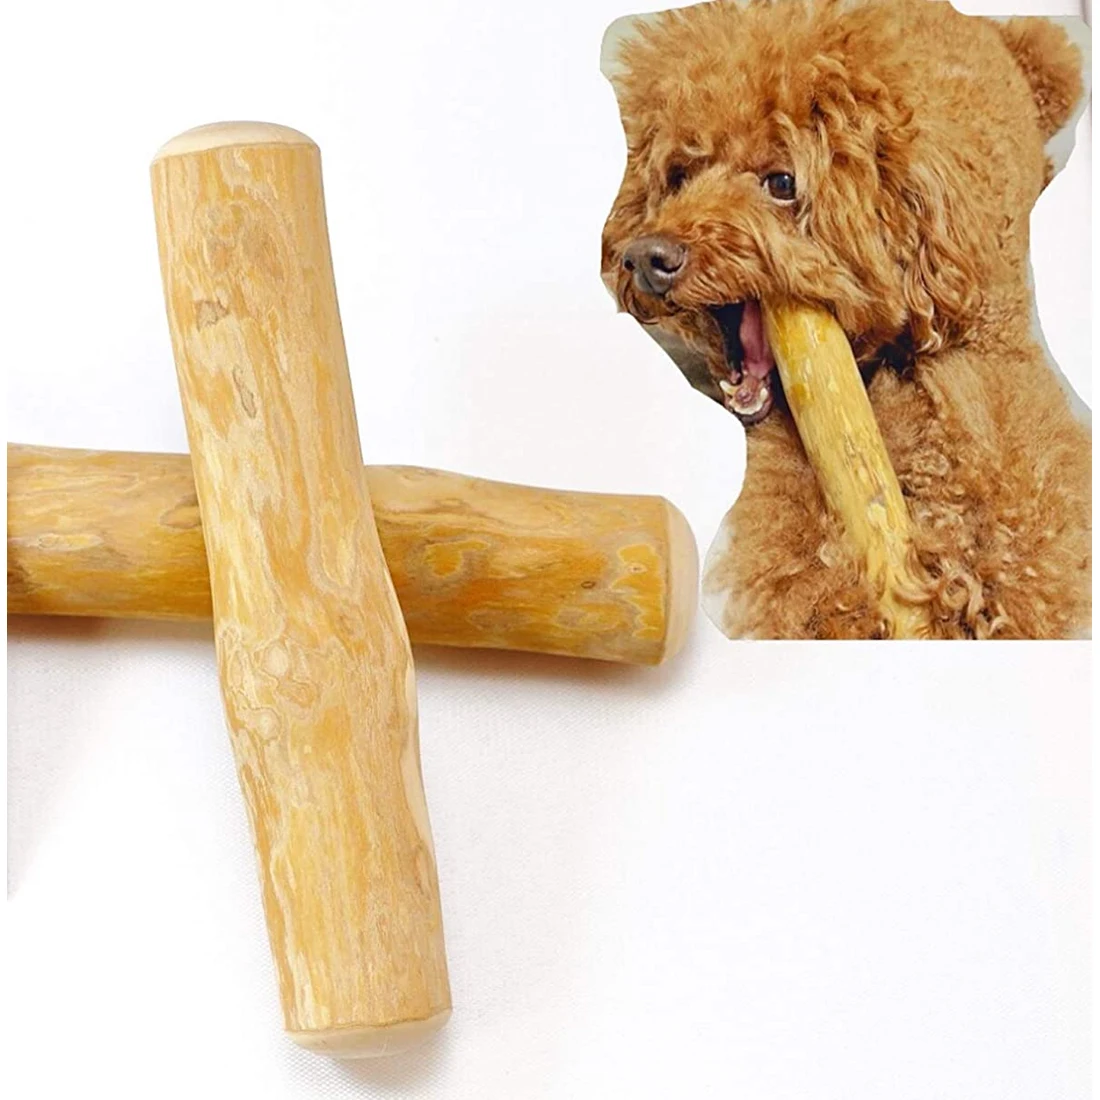 Игрушка для собак палка. Naturewood для собак кофейные палочки. Жевательная палочка для собак в белой упаковке. Coffee Wood игрушка для собак "кофейная палочка с петлёй", 25см, l (Вьетнам).